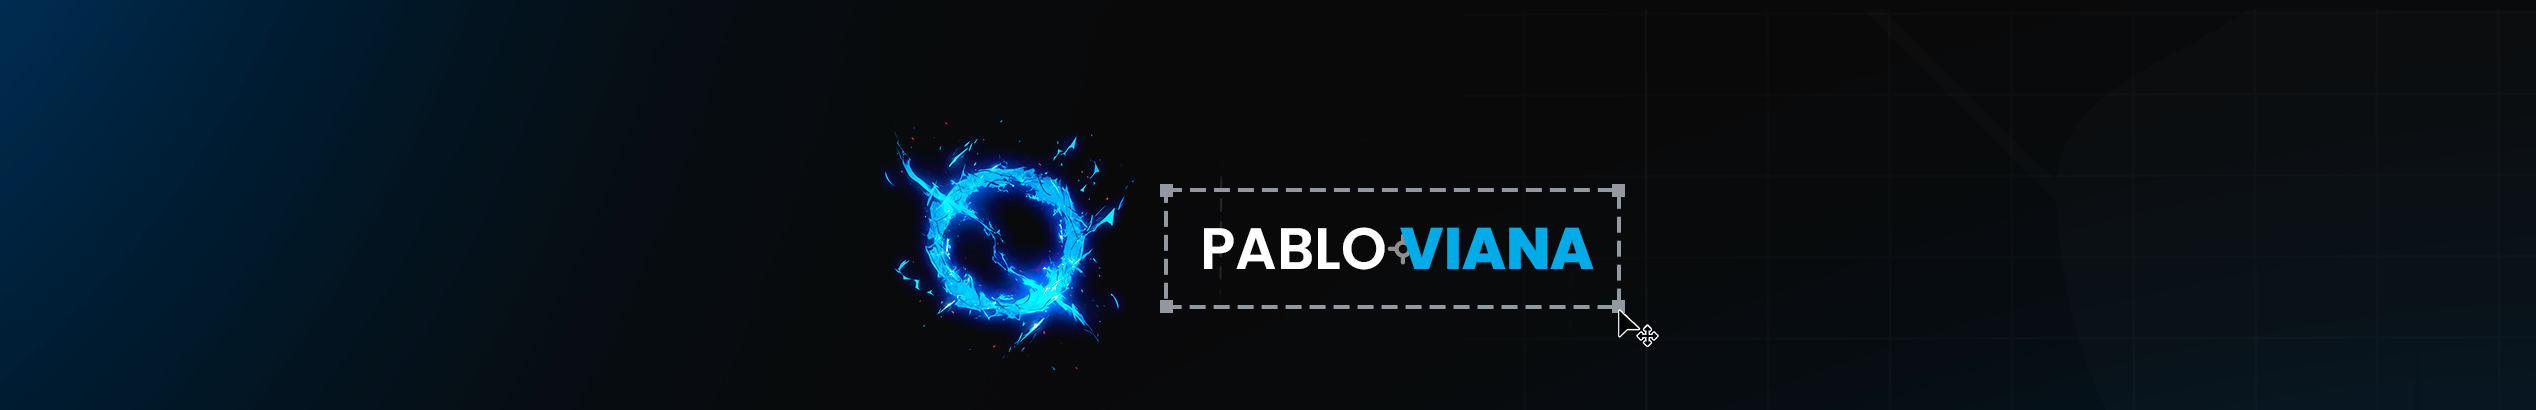 Pablo Viana ✪'s profile banner